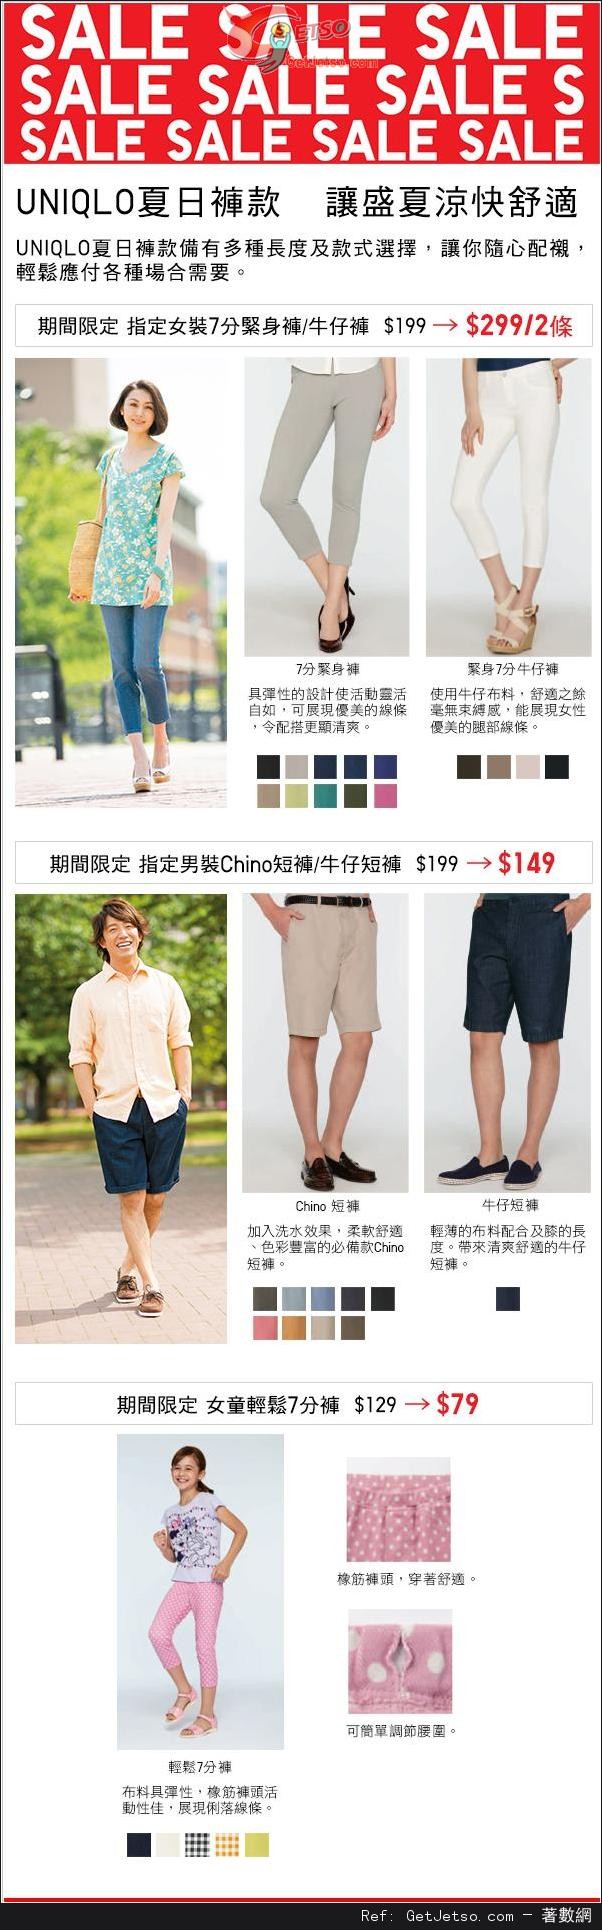 UNIQLO 指定夏日褲款限定價優惠(至14年8月5日)圖片1